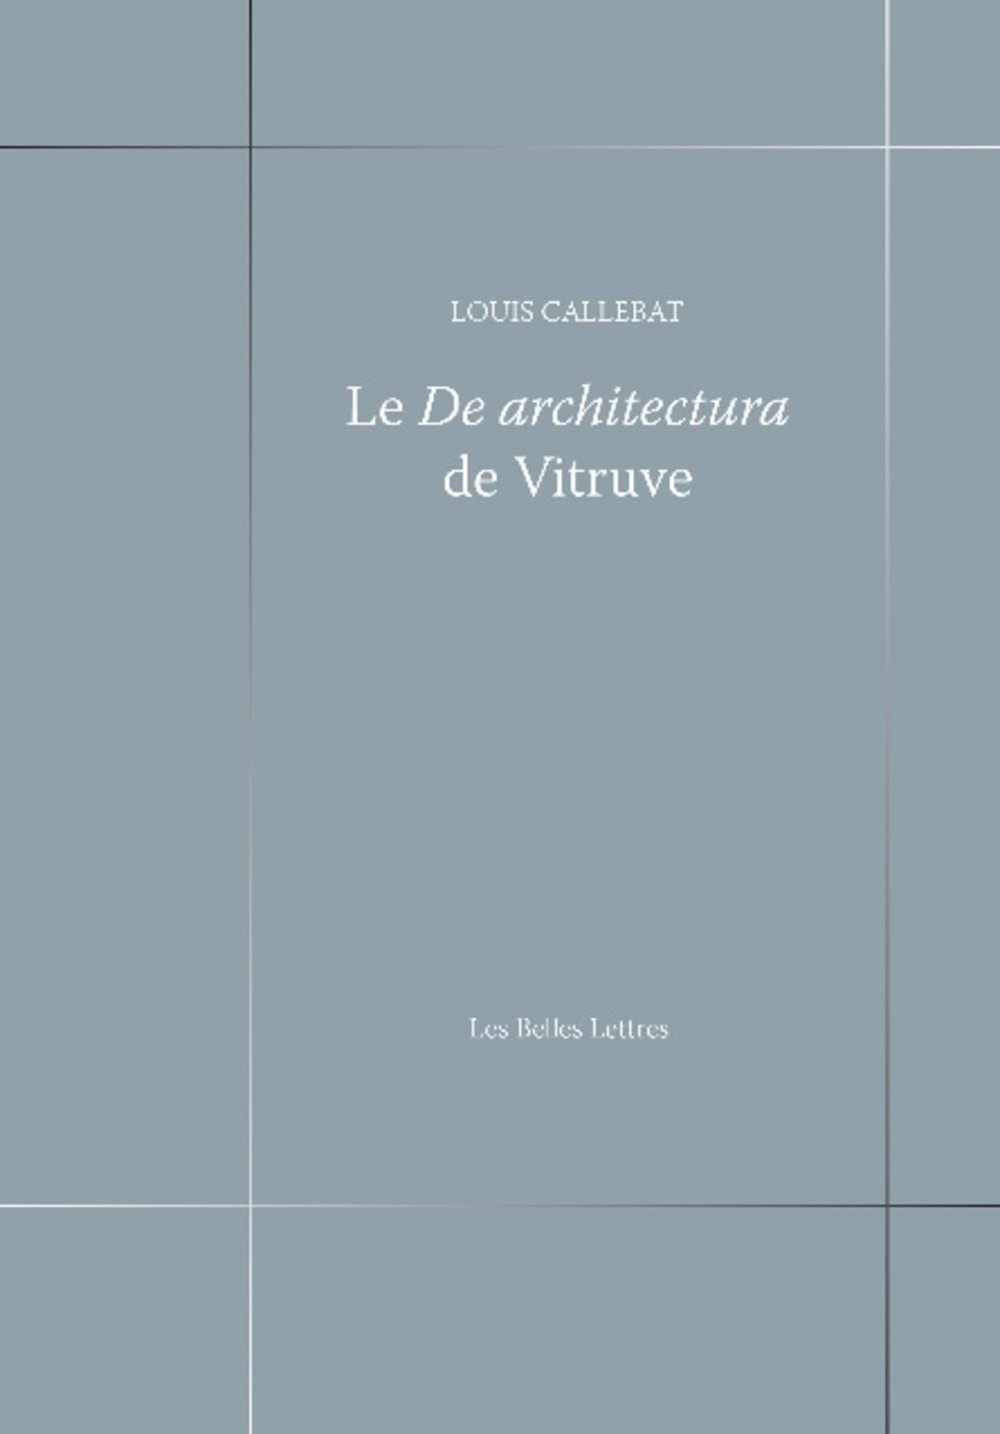 Le De architectura de Vitruve, 2017, 464 p.